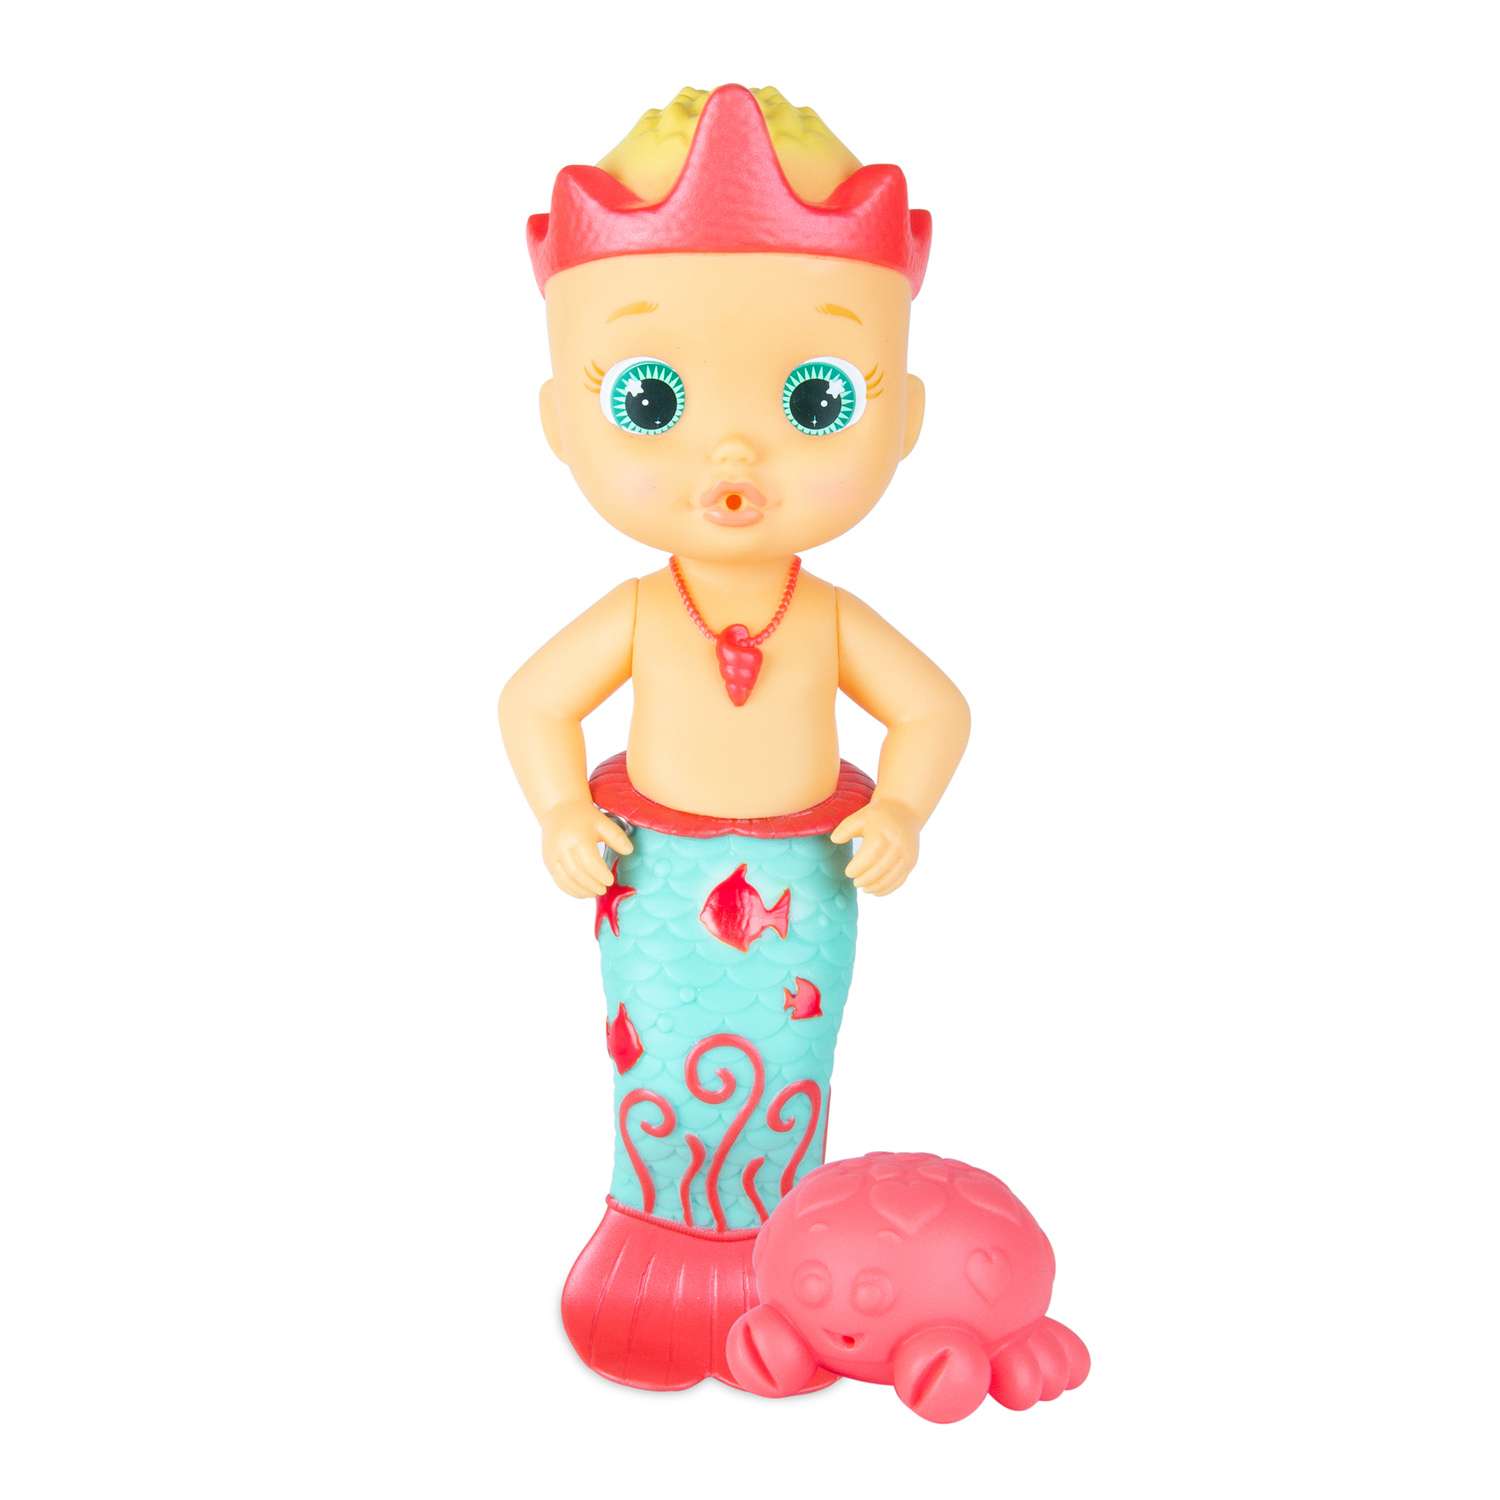 Кукла IMC Toys Bloopies для купания Cobi русалочка 26 см 99678 - фото 1